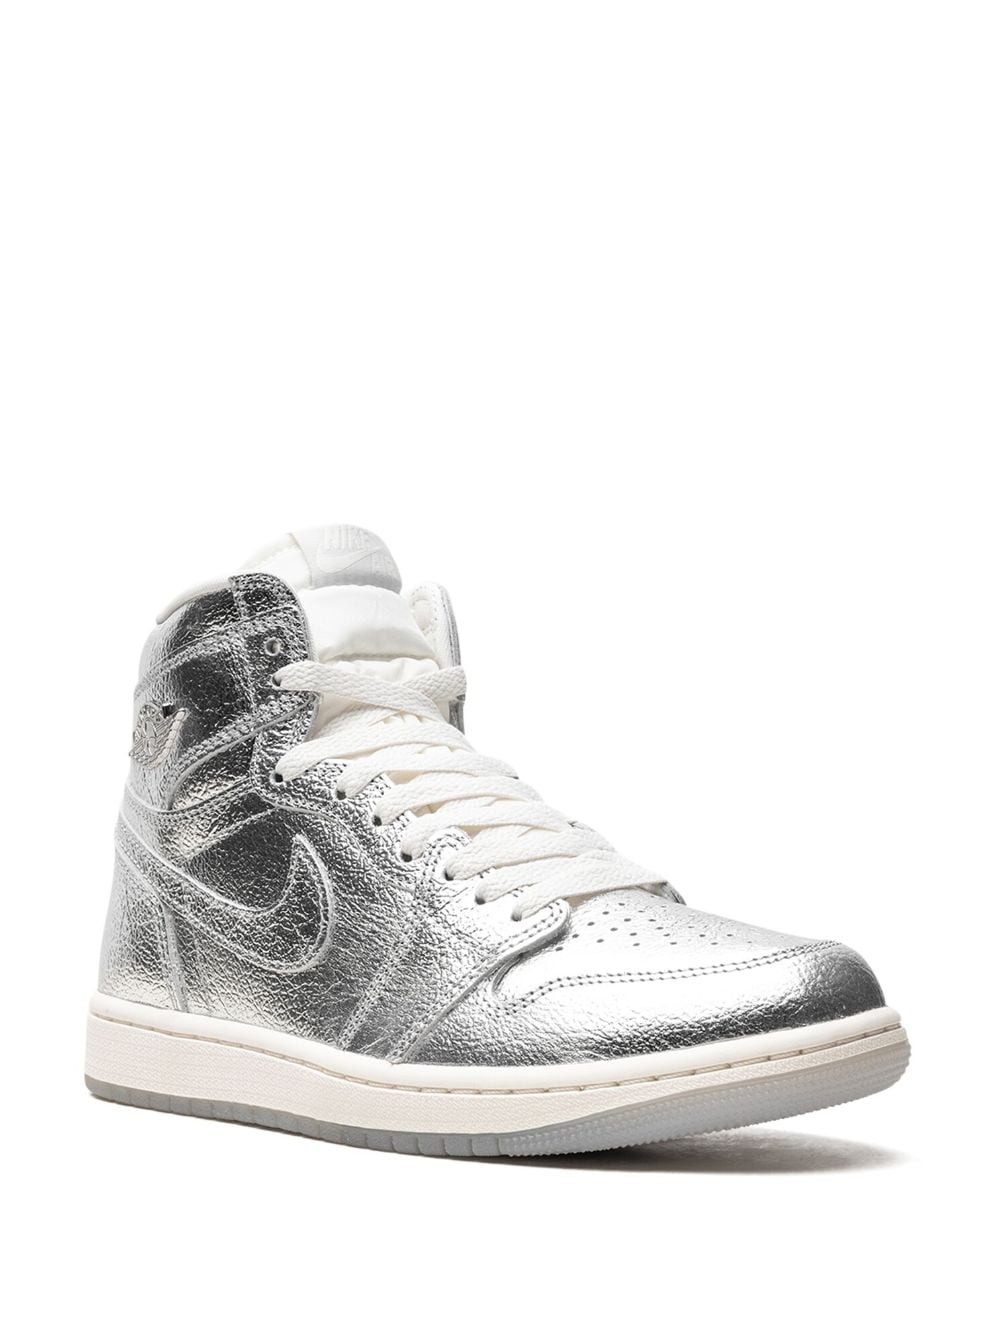 Image 2 of Jordan Air Jordan 1 High OG "Metallic Silver" sneakers